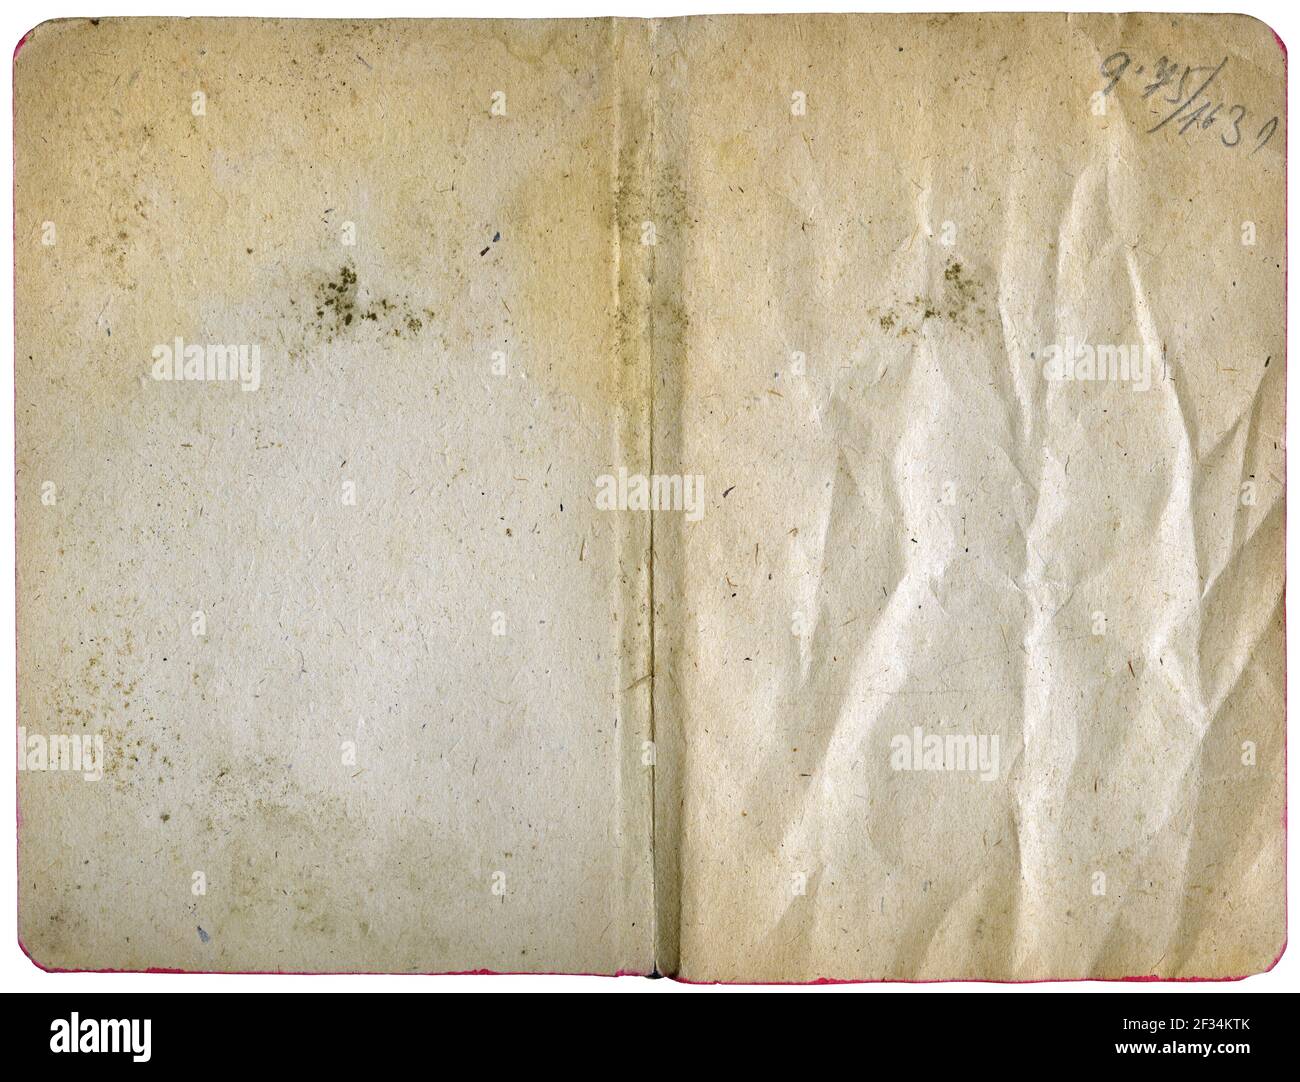 Agenda aperta o notebook isolato su bianco - bianco vintage fogli di carta con grana grugnosa Foto Stock